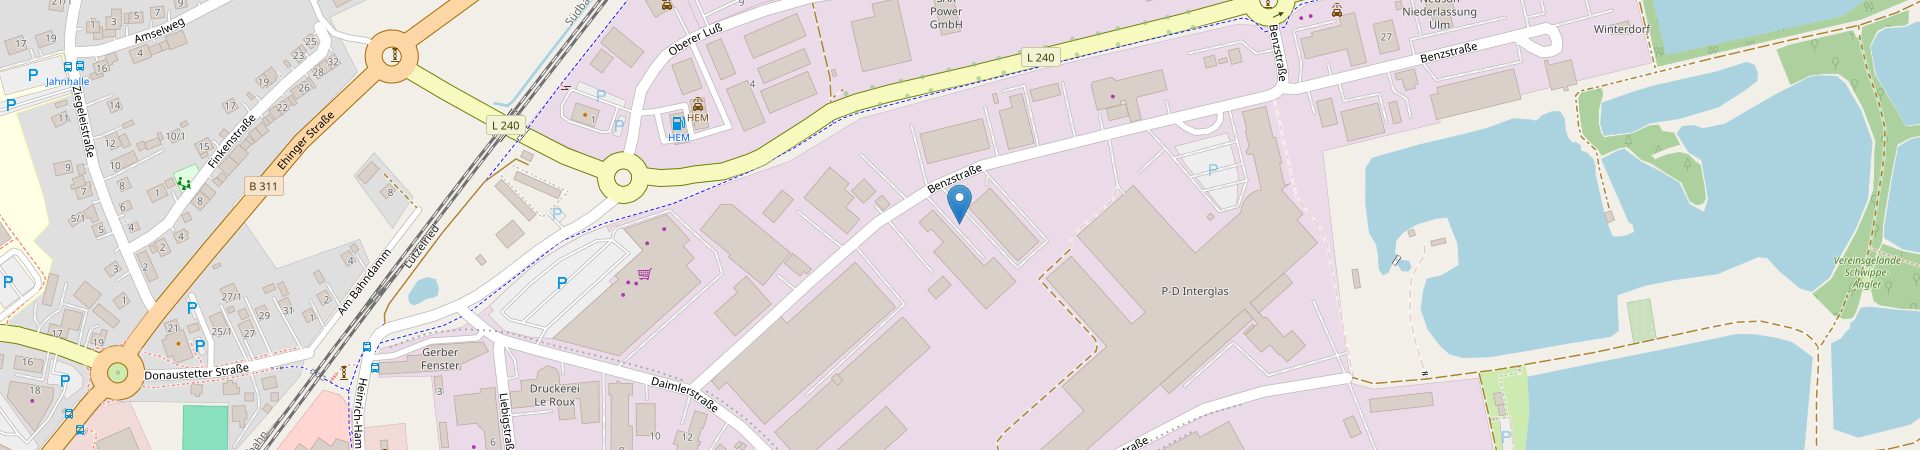 Openstreetmap Kartenausschnitt vom Standort BRANDNER Stahlbau GmbH & Co. KG